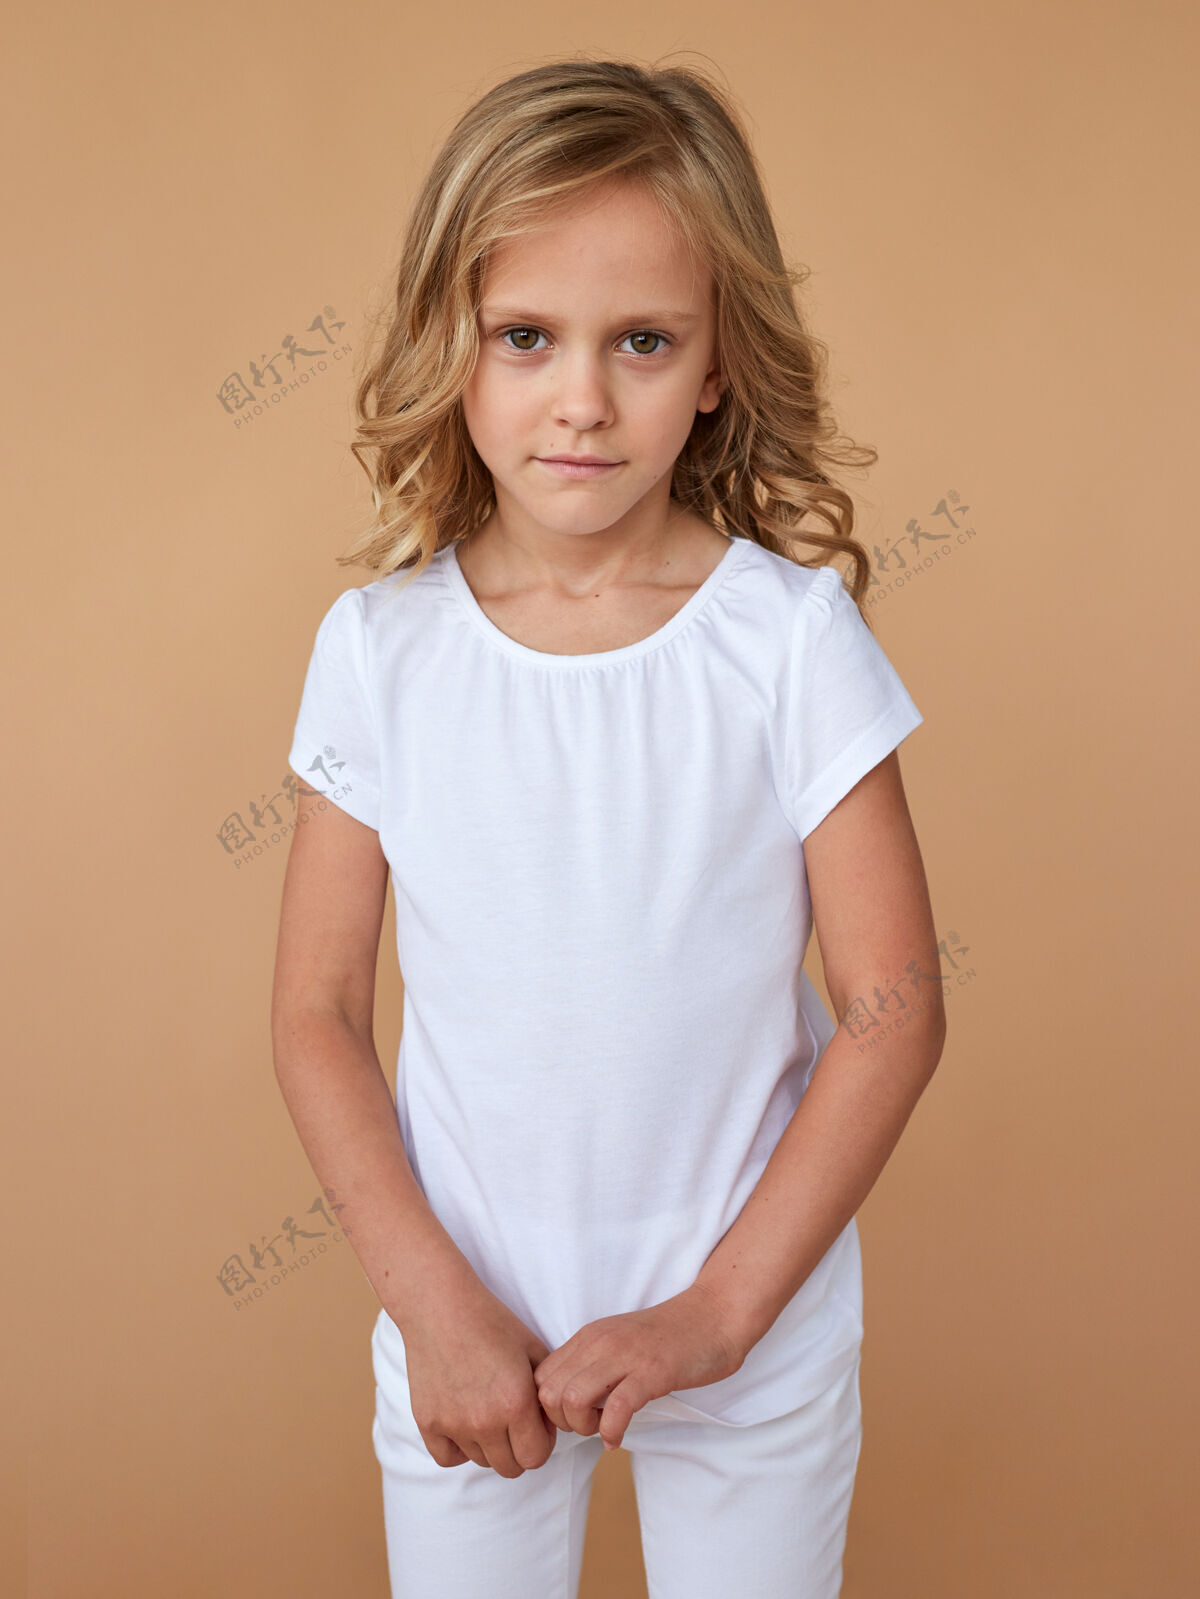 小前面是一个穿着白色衣服 头发卷曲 胆小可爱的小女孩的肖像服装.时尚照片.垂直查看童年孩子年轻